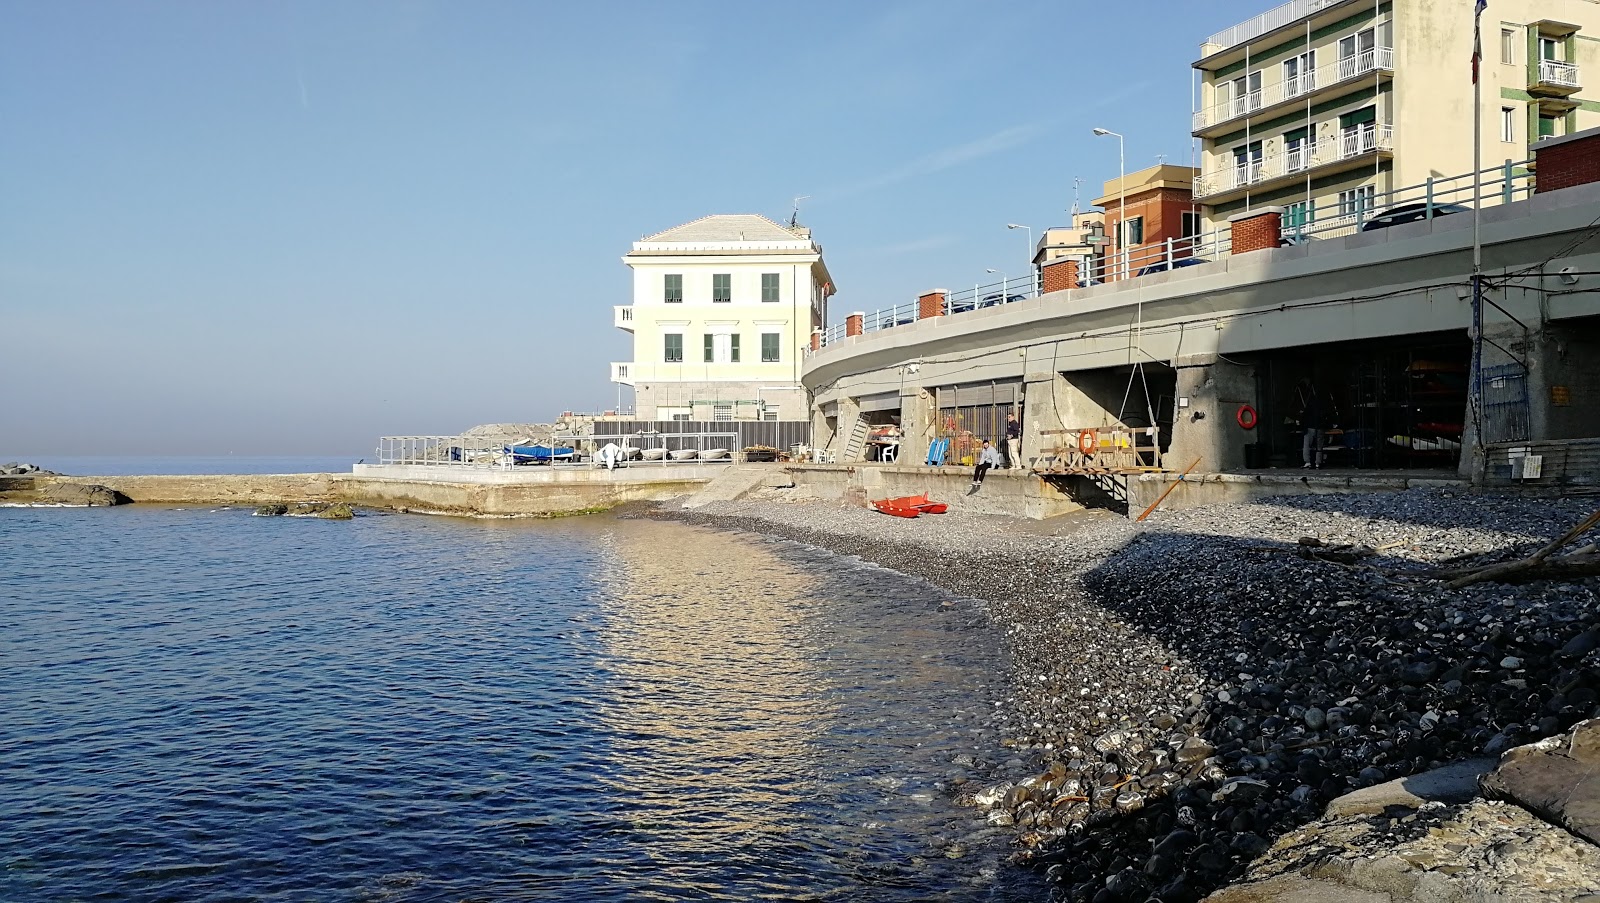 Foto von Spiaggia di Quinto III mit grauer kies Oberfläche